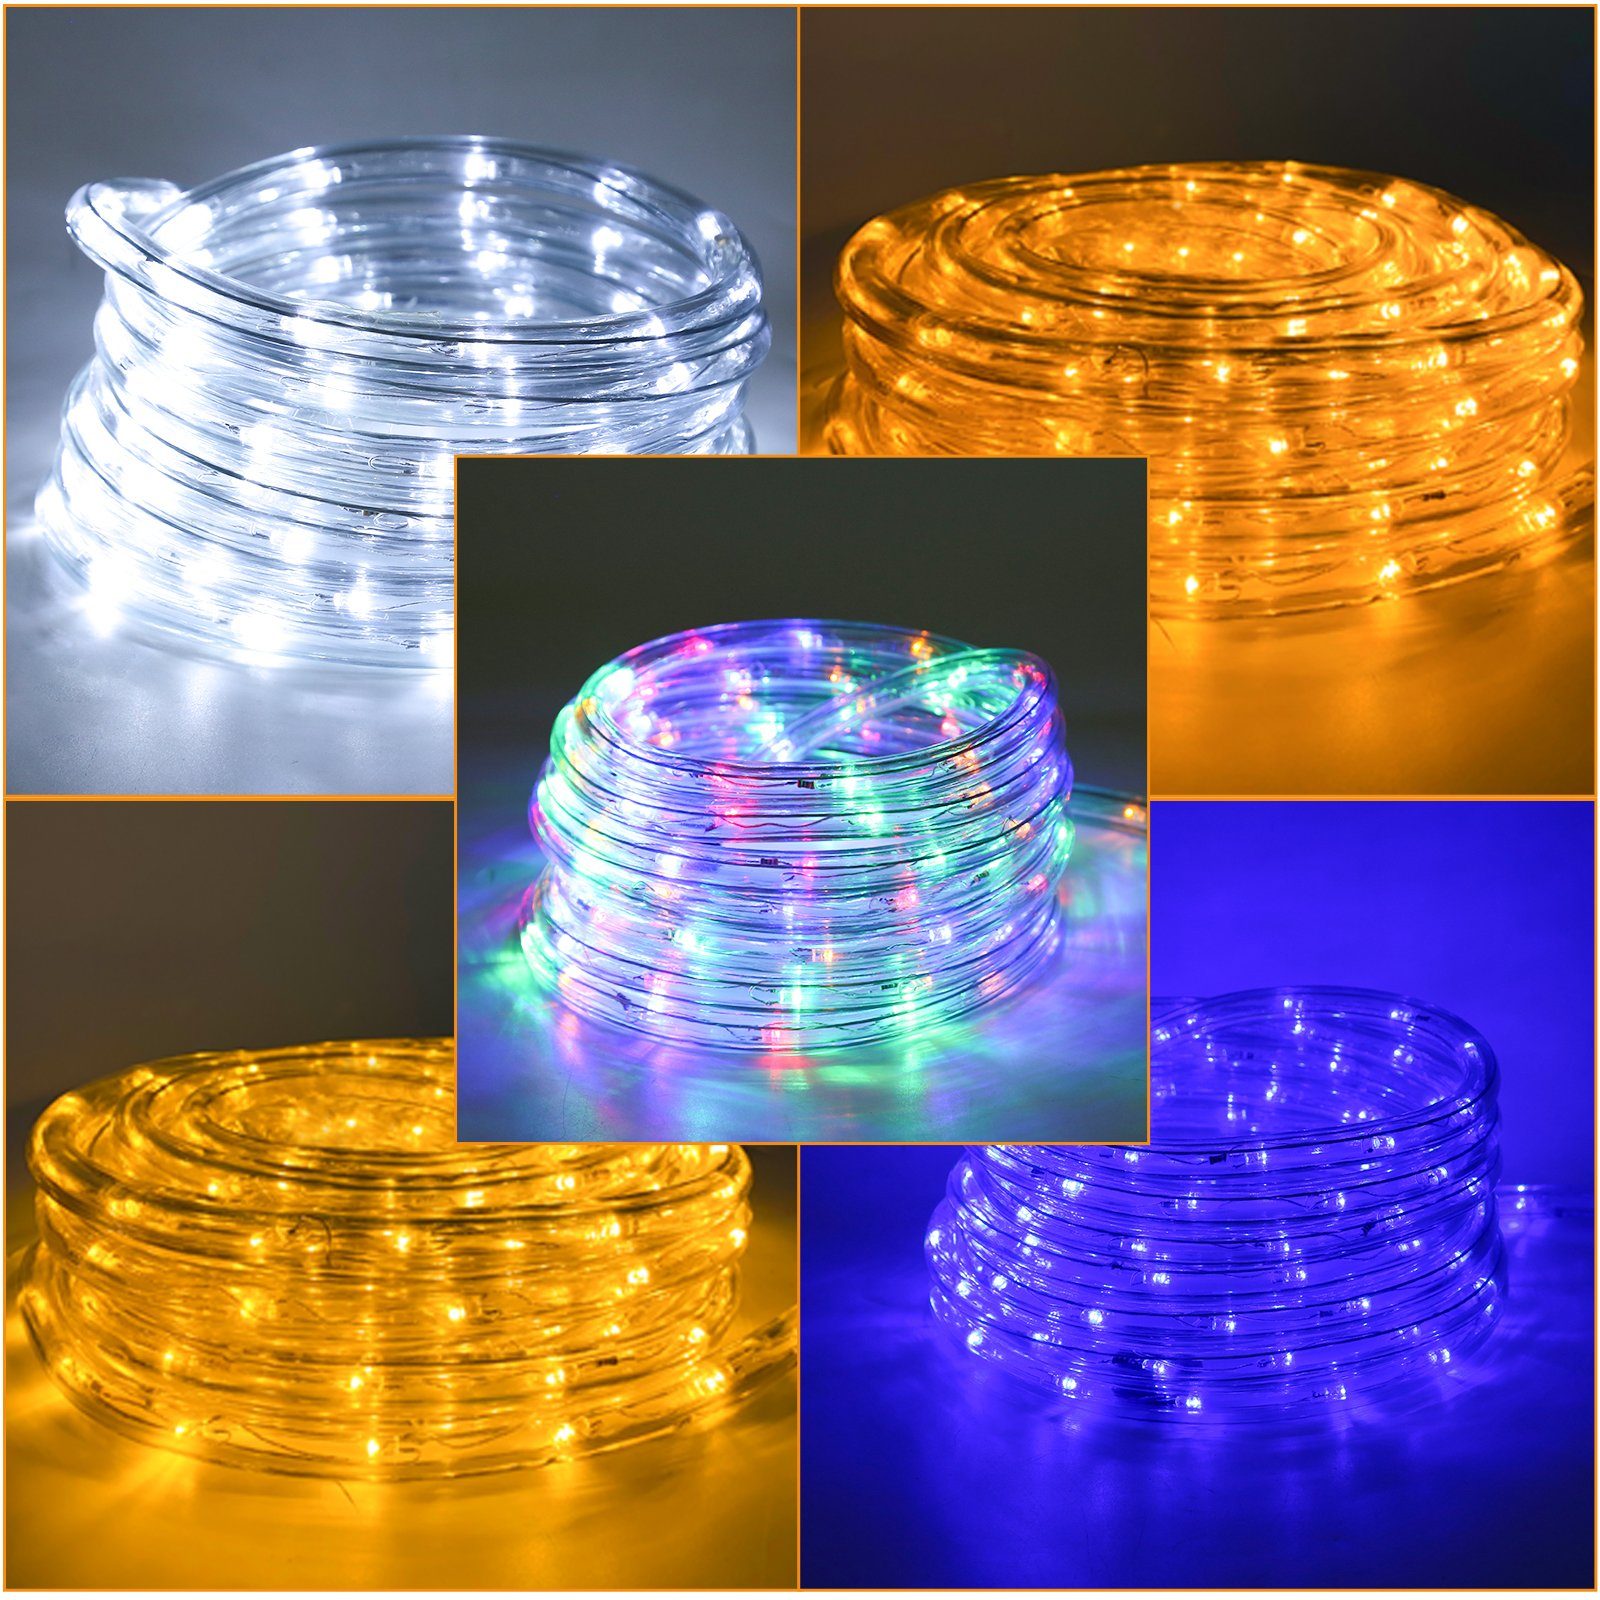 Clanmacy LED-Lichterkette LED Lichterschlauch Lichtschlauch Lichterkette Wasserdicht 40m Weiß